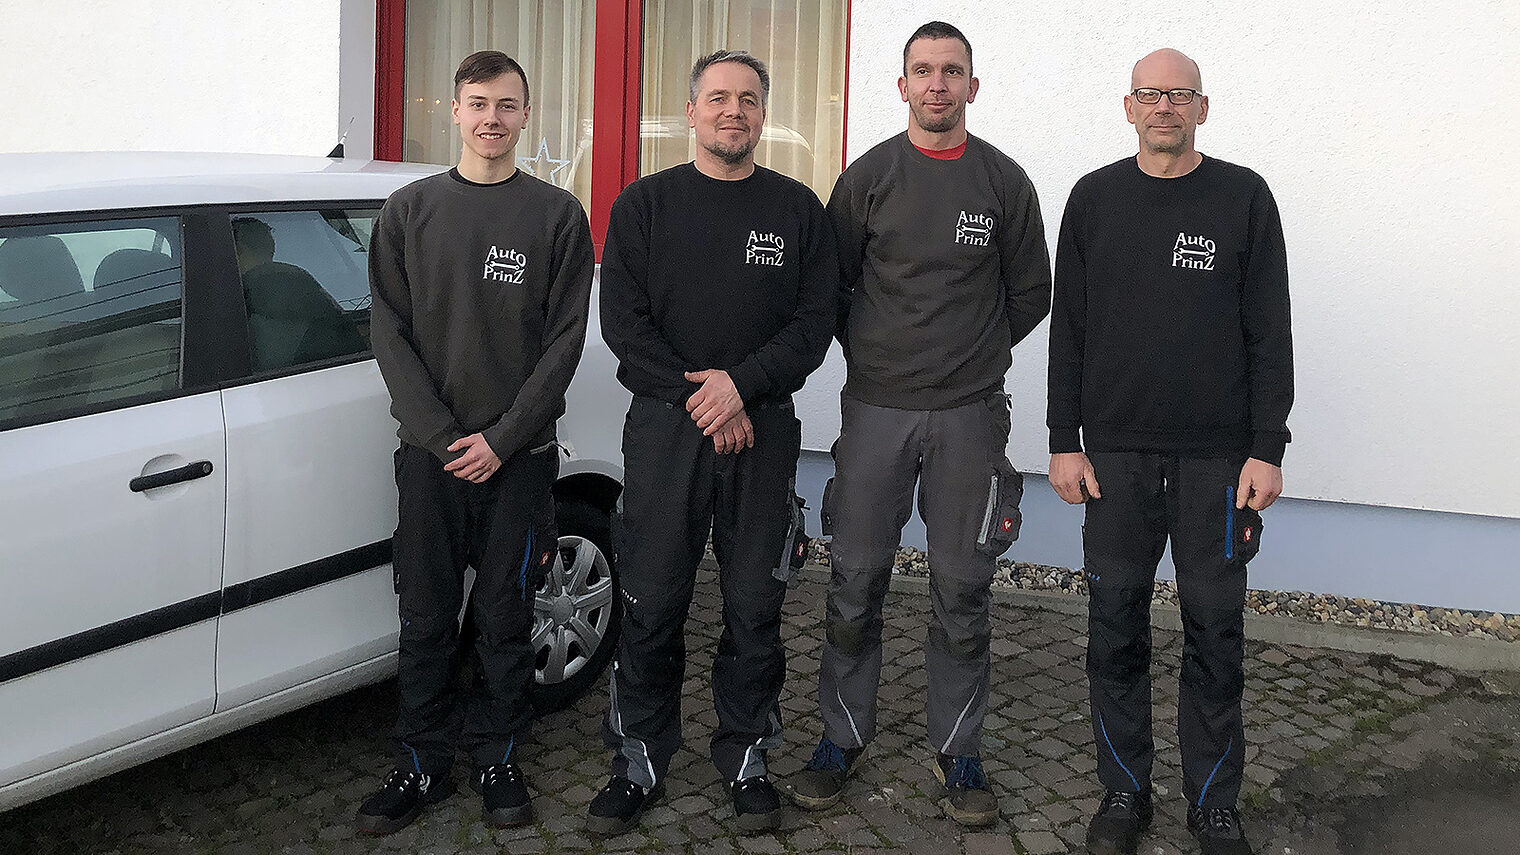 Historische Auto-Werkstatt in Schildau / Stefan Prinz führt Familienunternehmen in fünfter Generation.